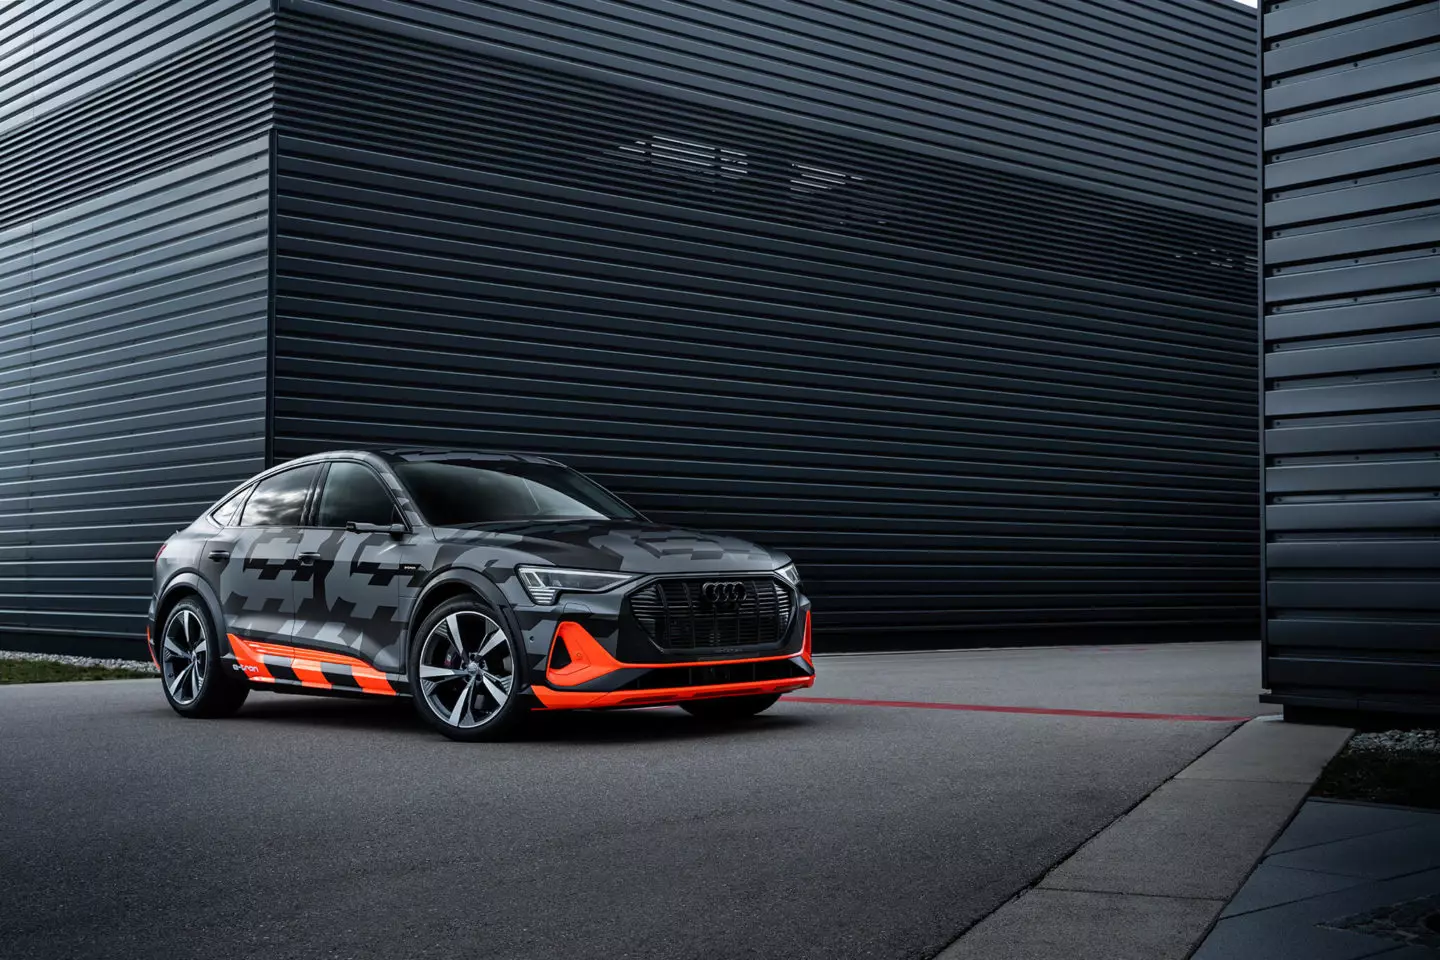 រថយន្ត Audi e-tron S Sportback